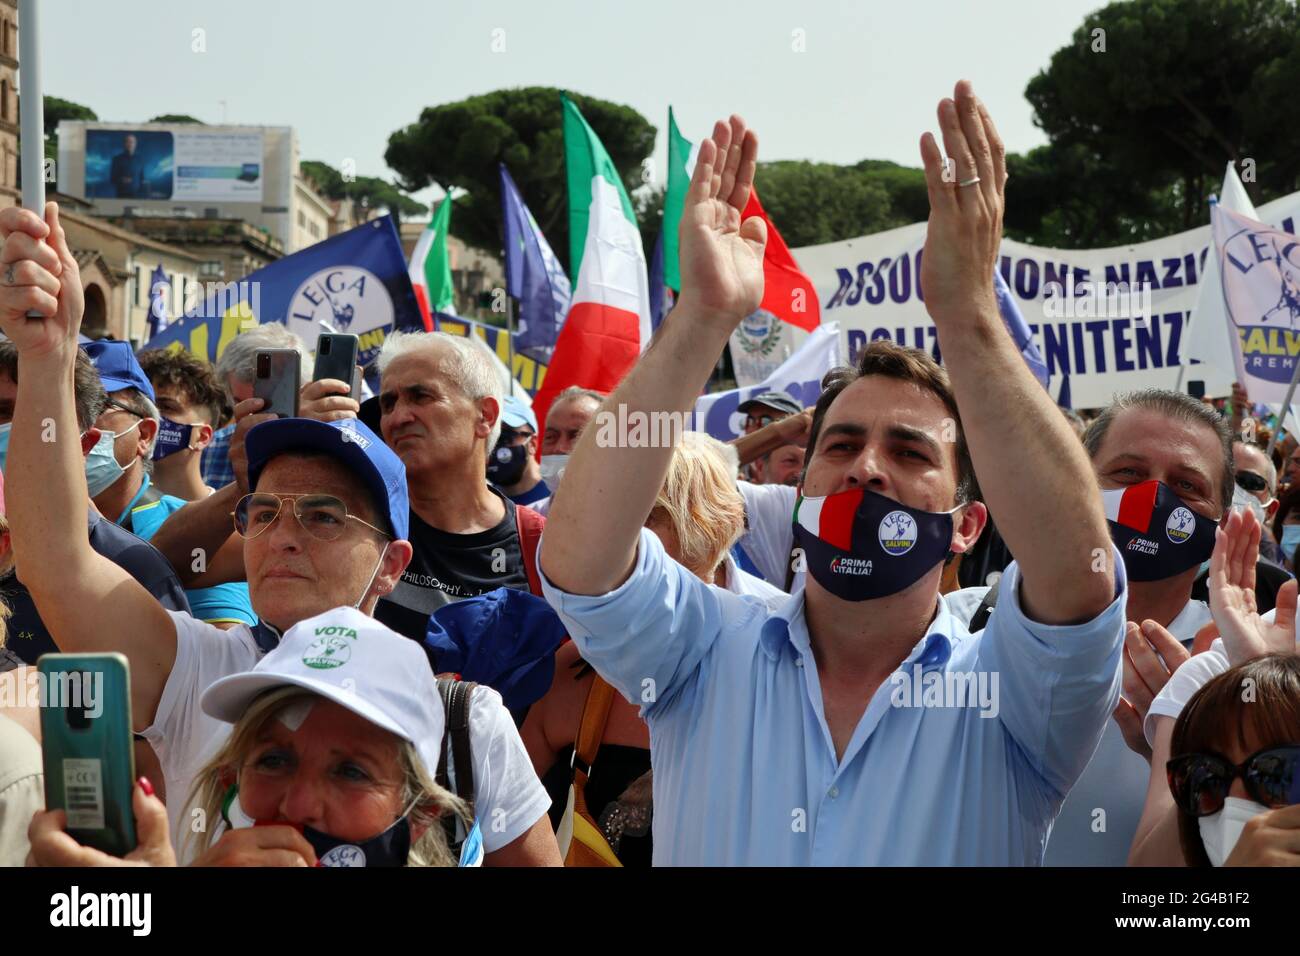 Partidarios de Matteo Salvini, líder del Partido conservador italiano Lega, visto en la convención 'Prima l'Italia' en Roma, el 19 de junio de 2021. Matteo Salvini, ex Viceprimer Ministro de Italia y Ministro del Interior de junio de 2018 a septiembre de 2019, ha sido Secretario de la Liga del Norte, actualmente Primera Ministra de la Lega per Salvini, desde 2013. Salvini se opone a la inmigración ilegal en Italia y la UE, así como a la gestión de la UE de los solicitantes de asilo y refugiados. El cartel, que dice: Impuesto fijo ahora, pide una reforma fiscal en Italia. (ELISA Gestri/Sipa EE.UU.) Foto de stock